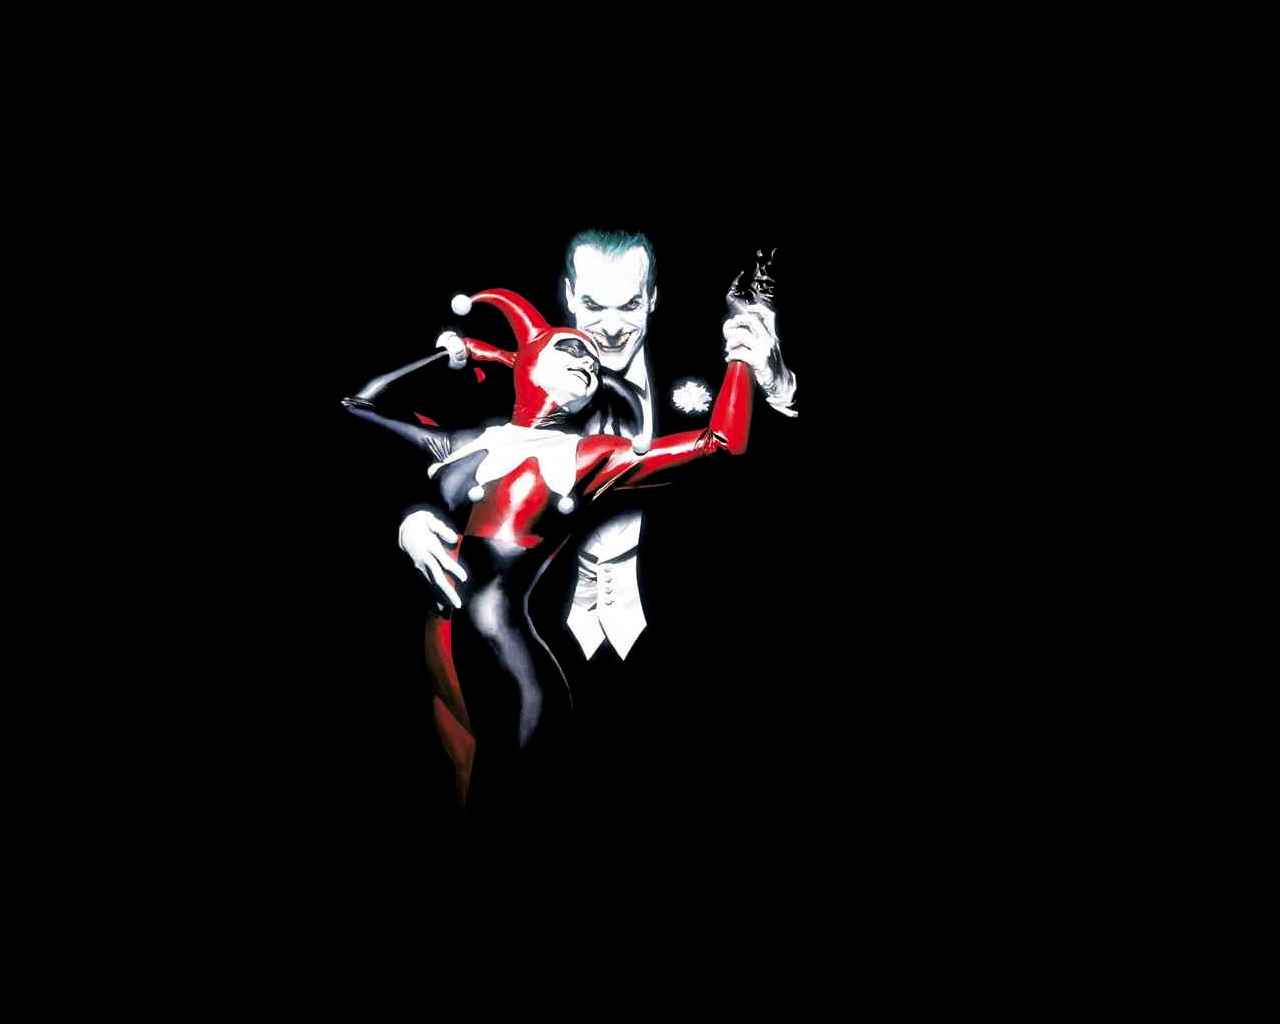 100 Joker And Harley Quinn Wallpapers  Wallpaperscom